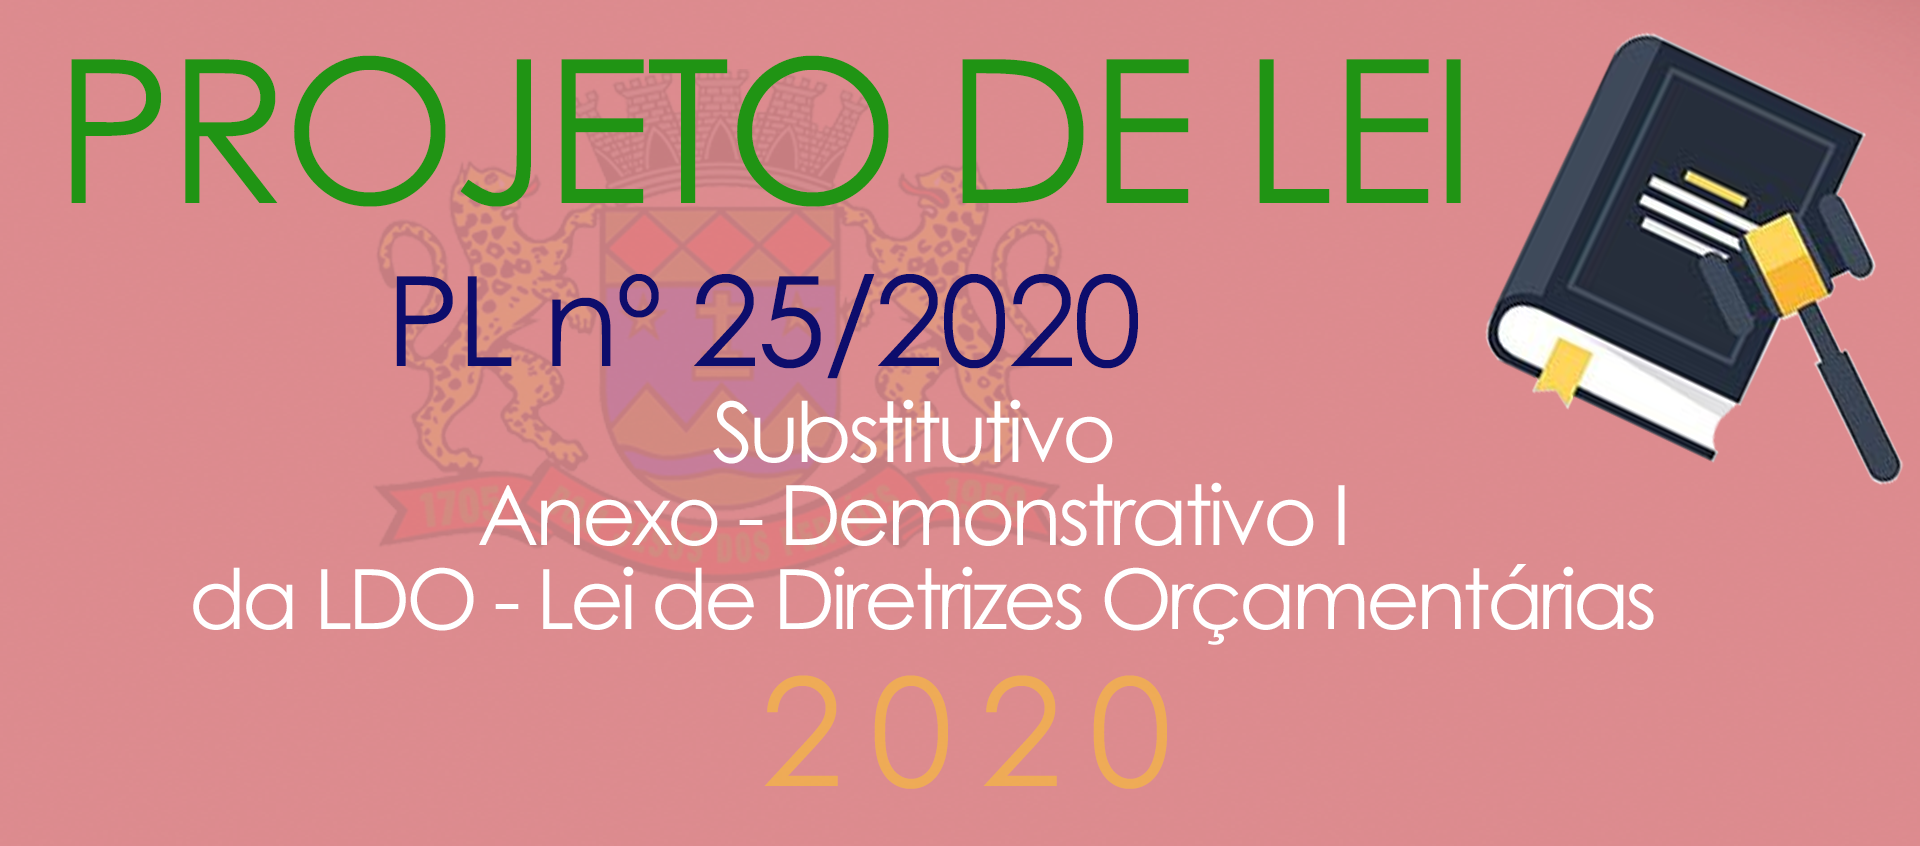 PL 25/2020 - Substitutivo do Demonstrativo I - LDO